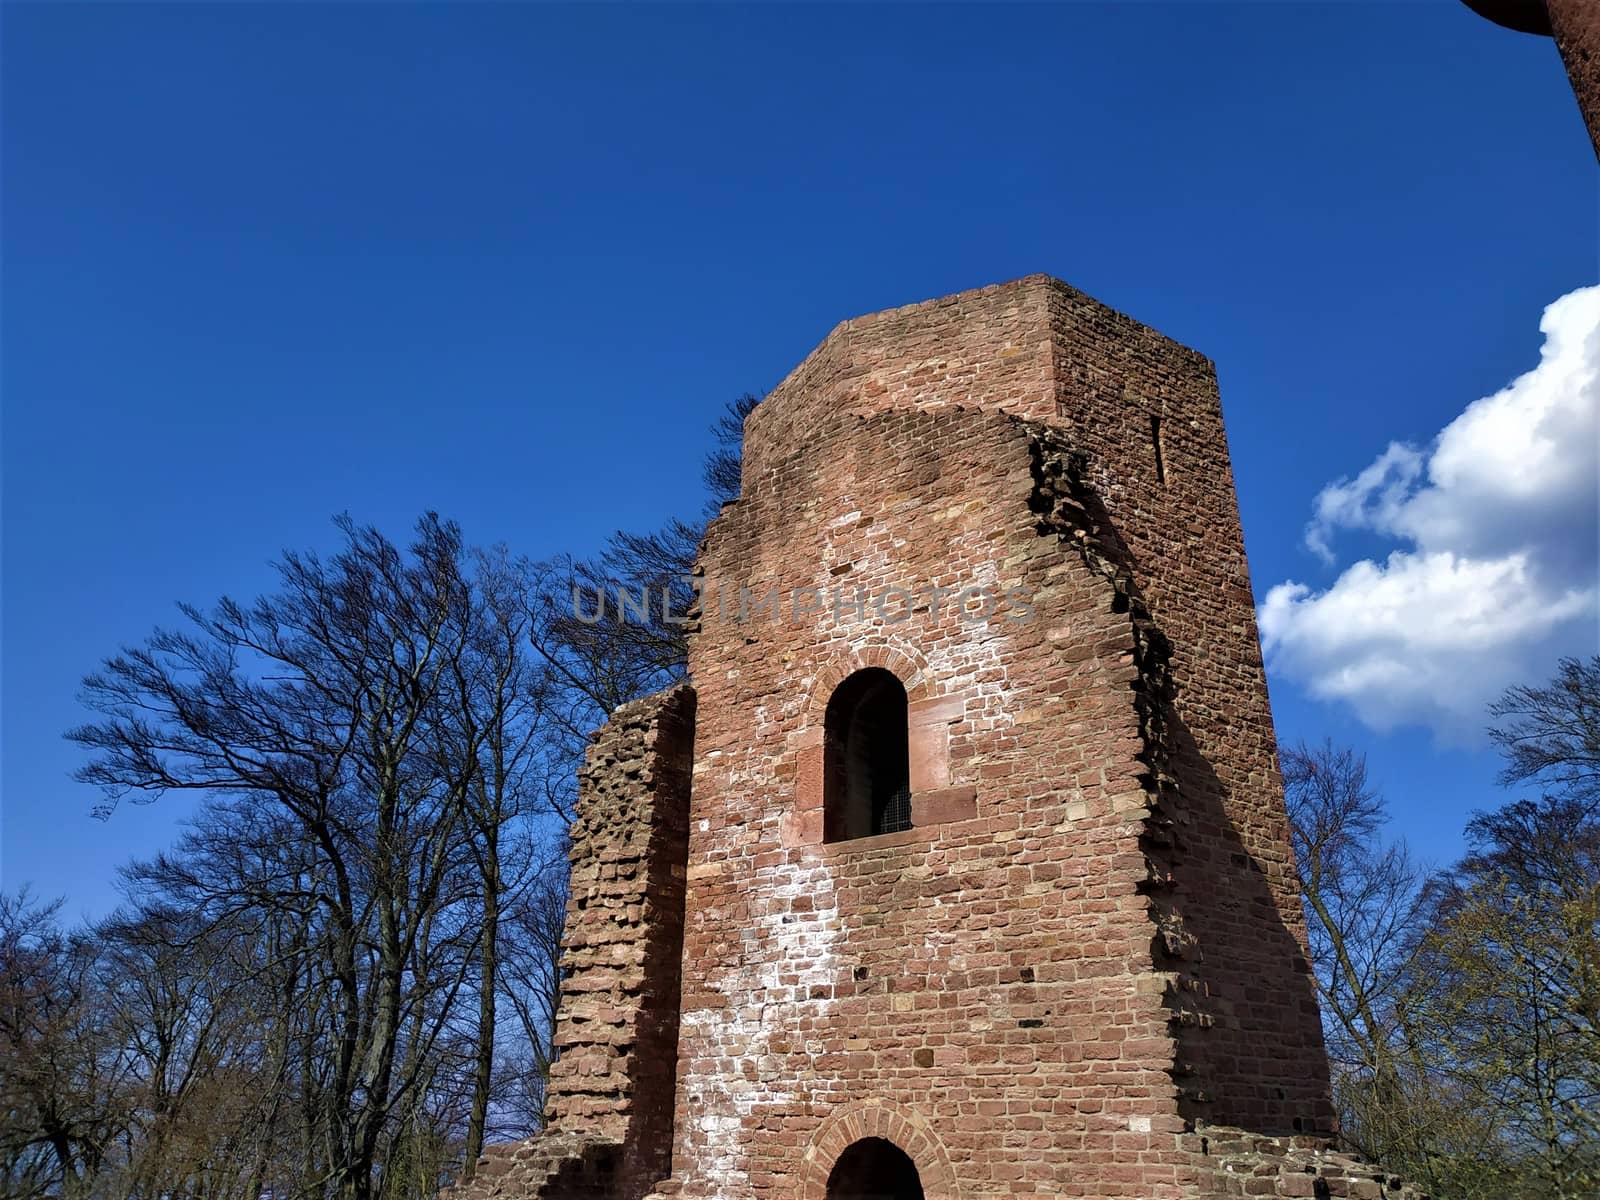 Tower of old monastery on the Heiligenberg in Heidelberg, Germany